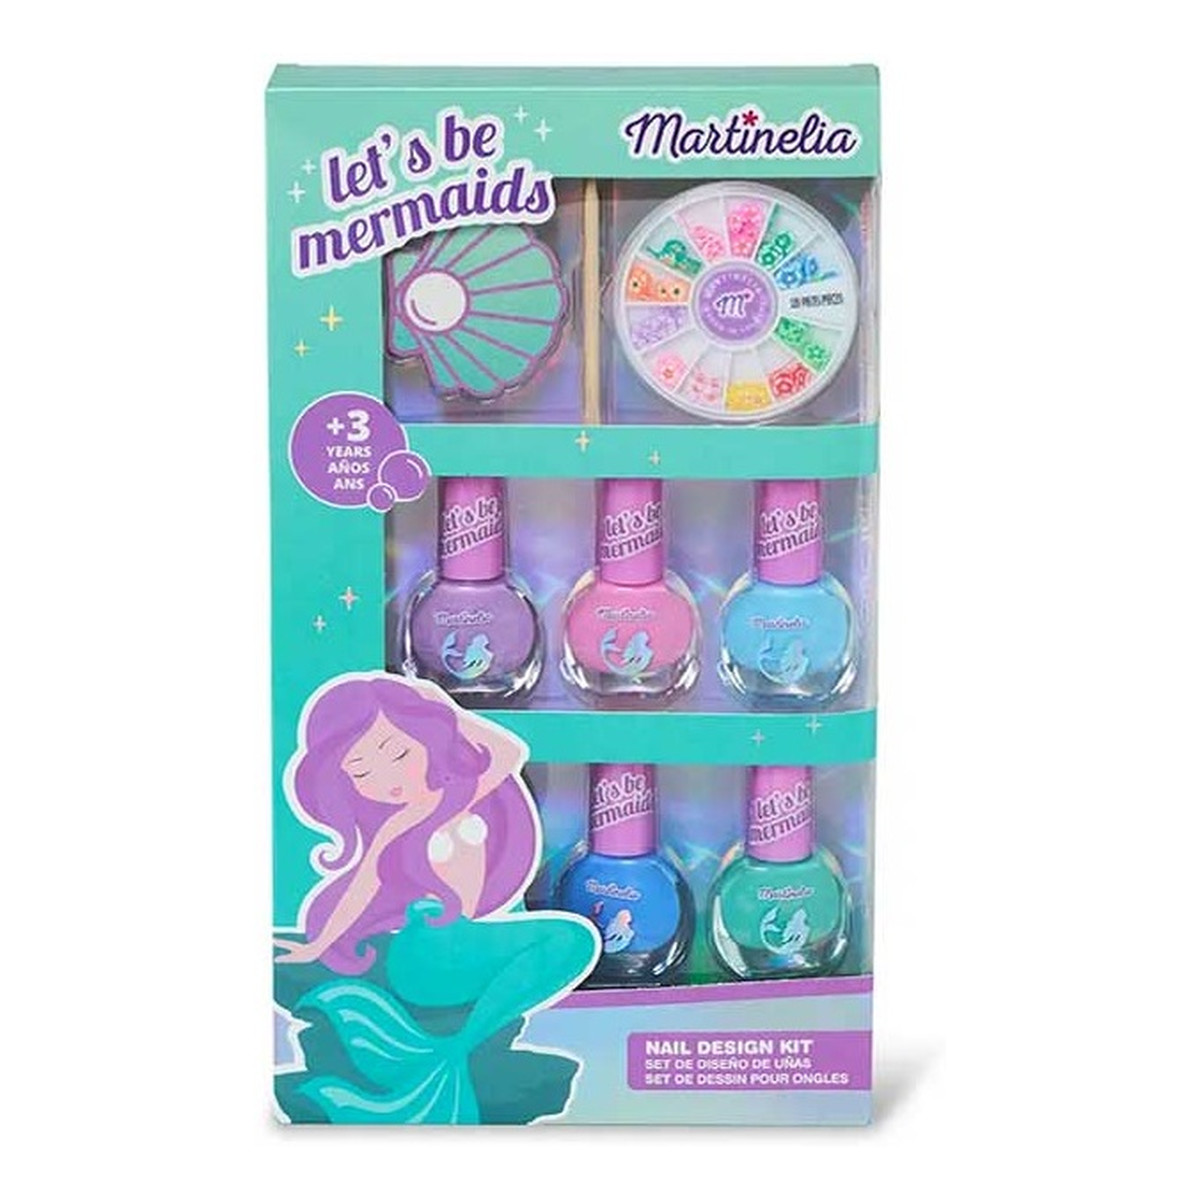 Martinelia Let's Be Mermaids Nails Desing Kit Zestaw lakier do paznokci 5x4ml + ozdoby do paznokci + pilniczek + patyczek do paznokci